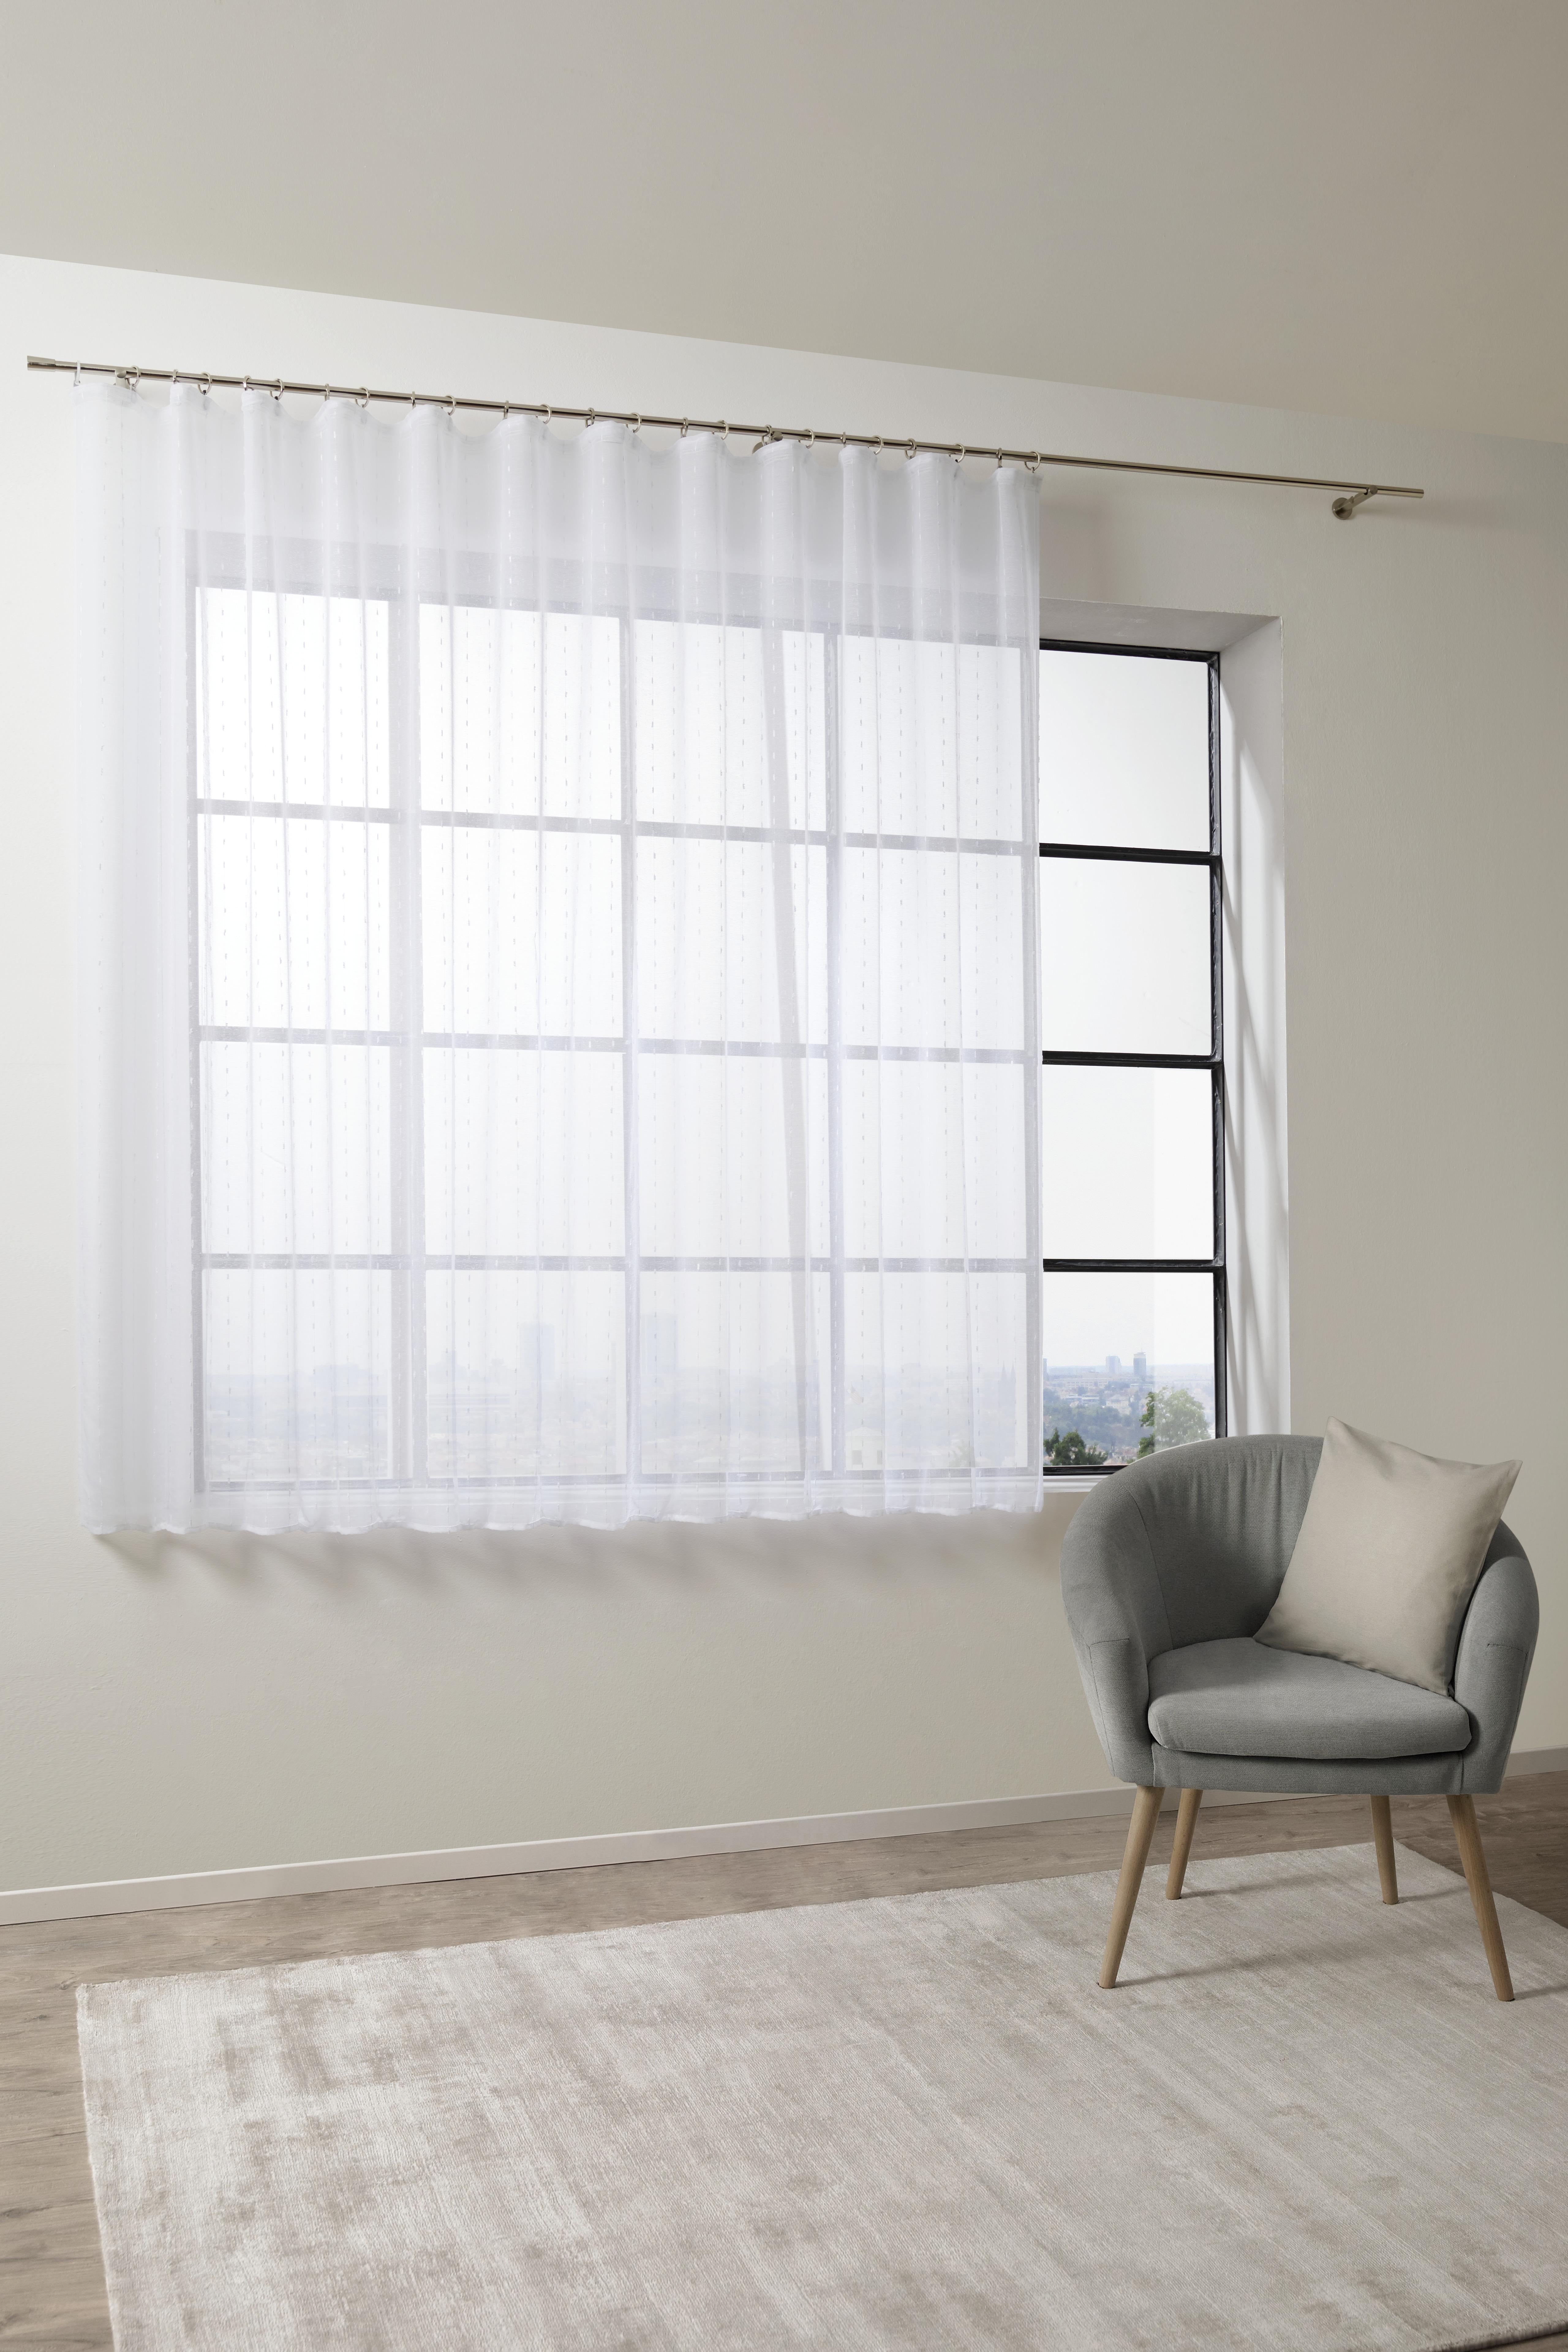 Kusová Záclona Lisa Store 2, 300/175cm - bílá, Romantický / Rustikální, textil (300/175cm) - Modern Living